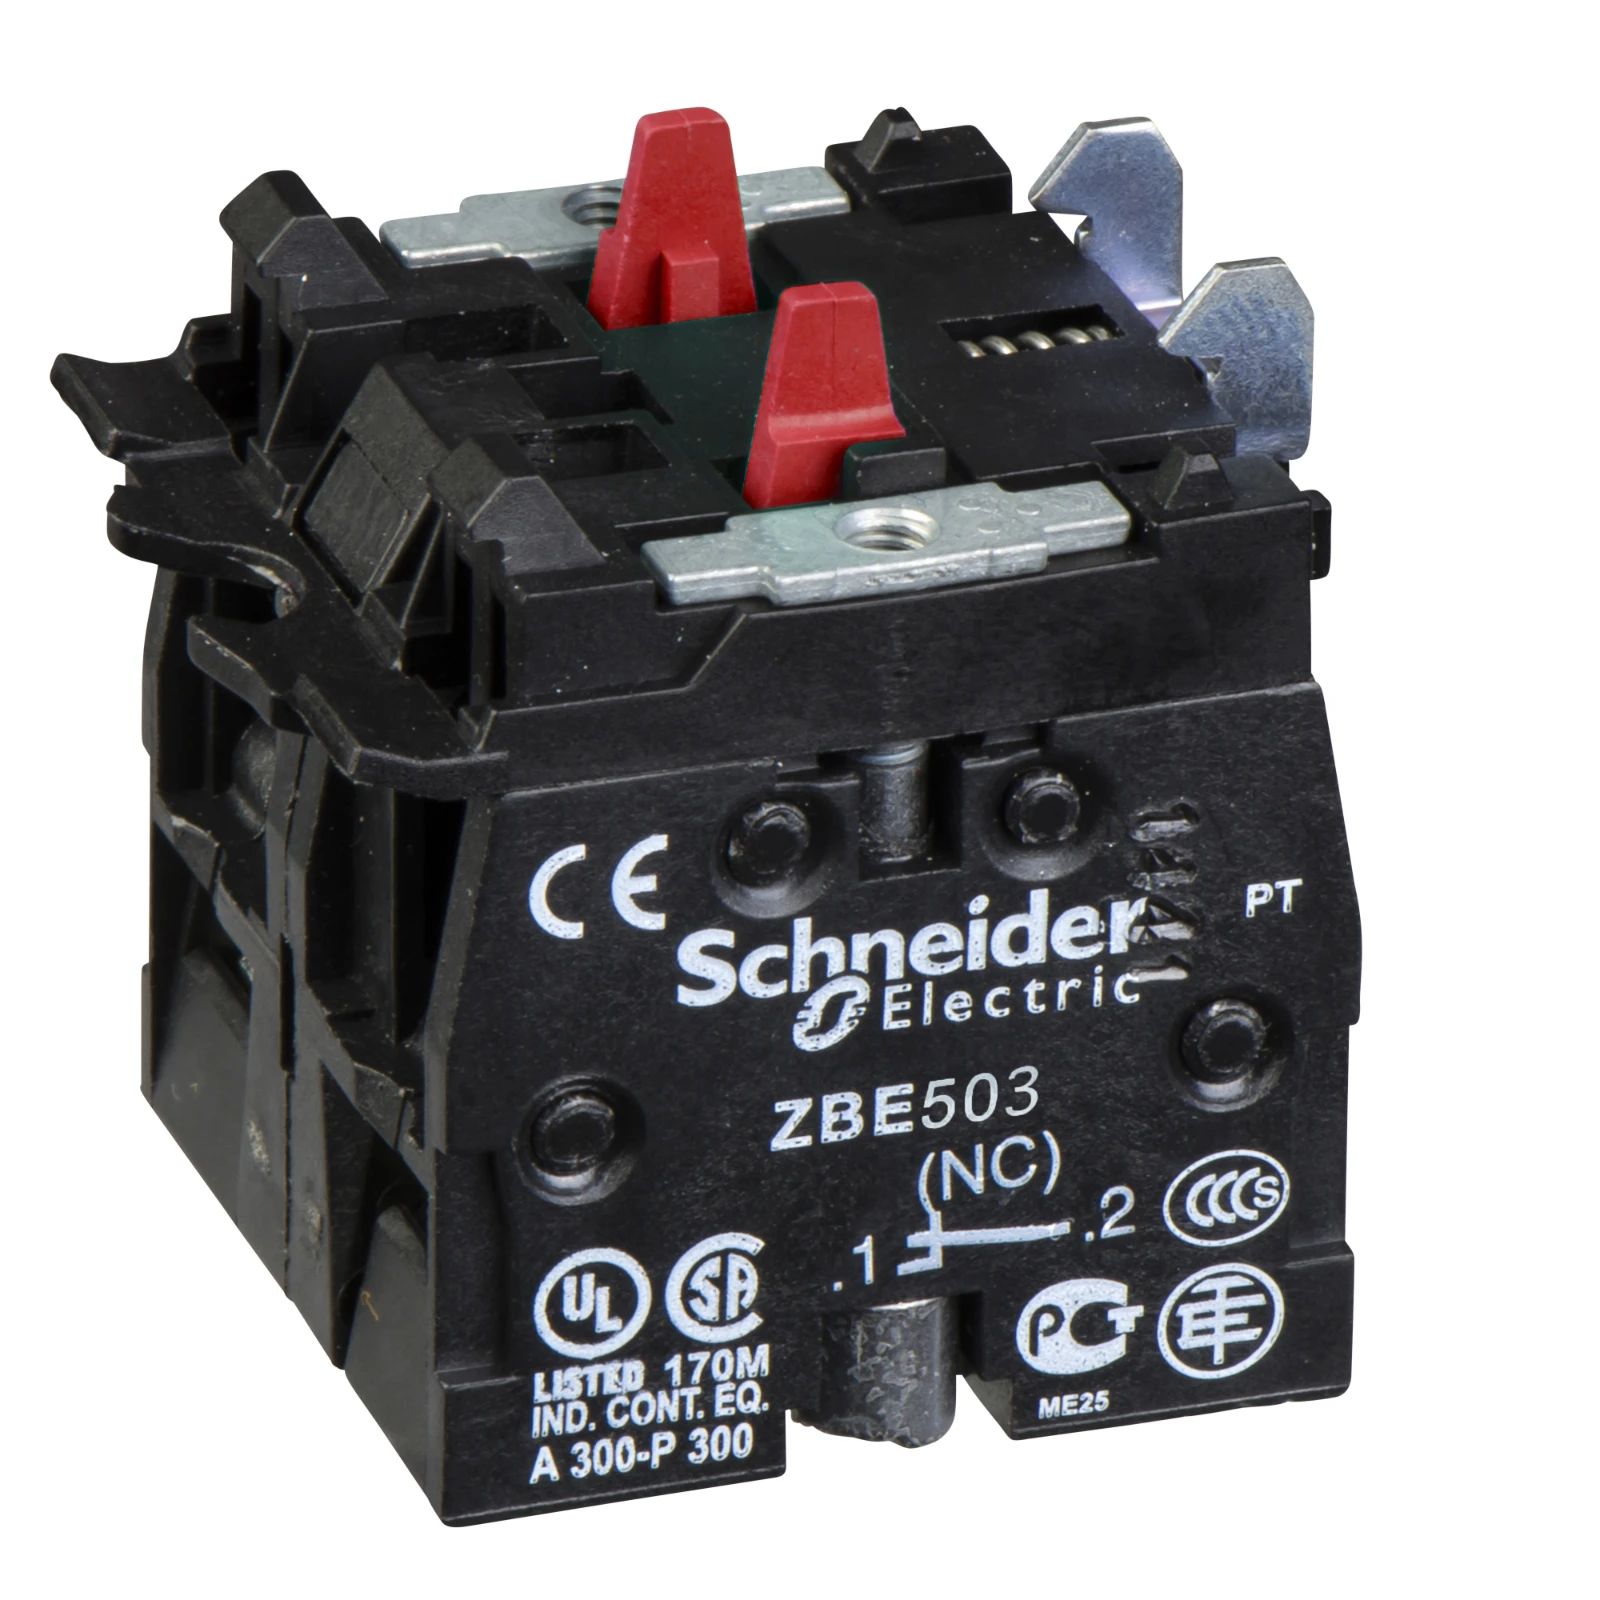 2475466 - Schneider Electric ZBE503